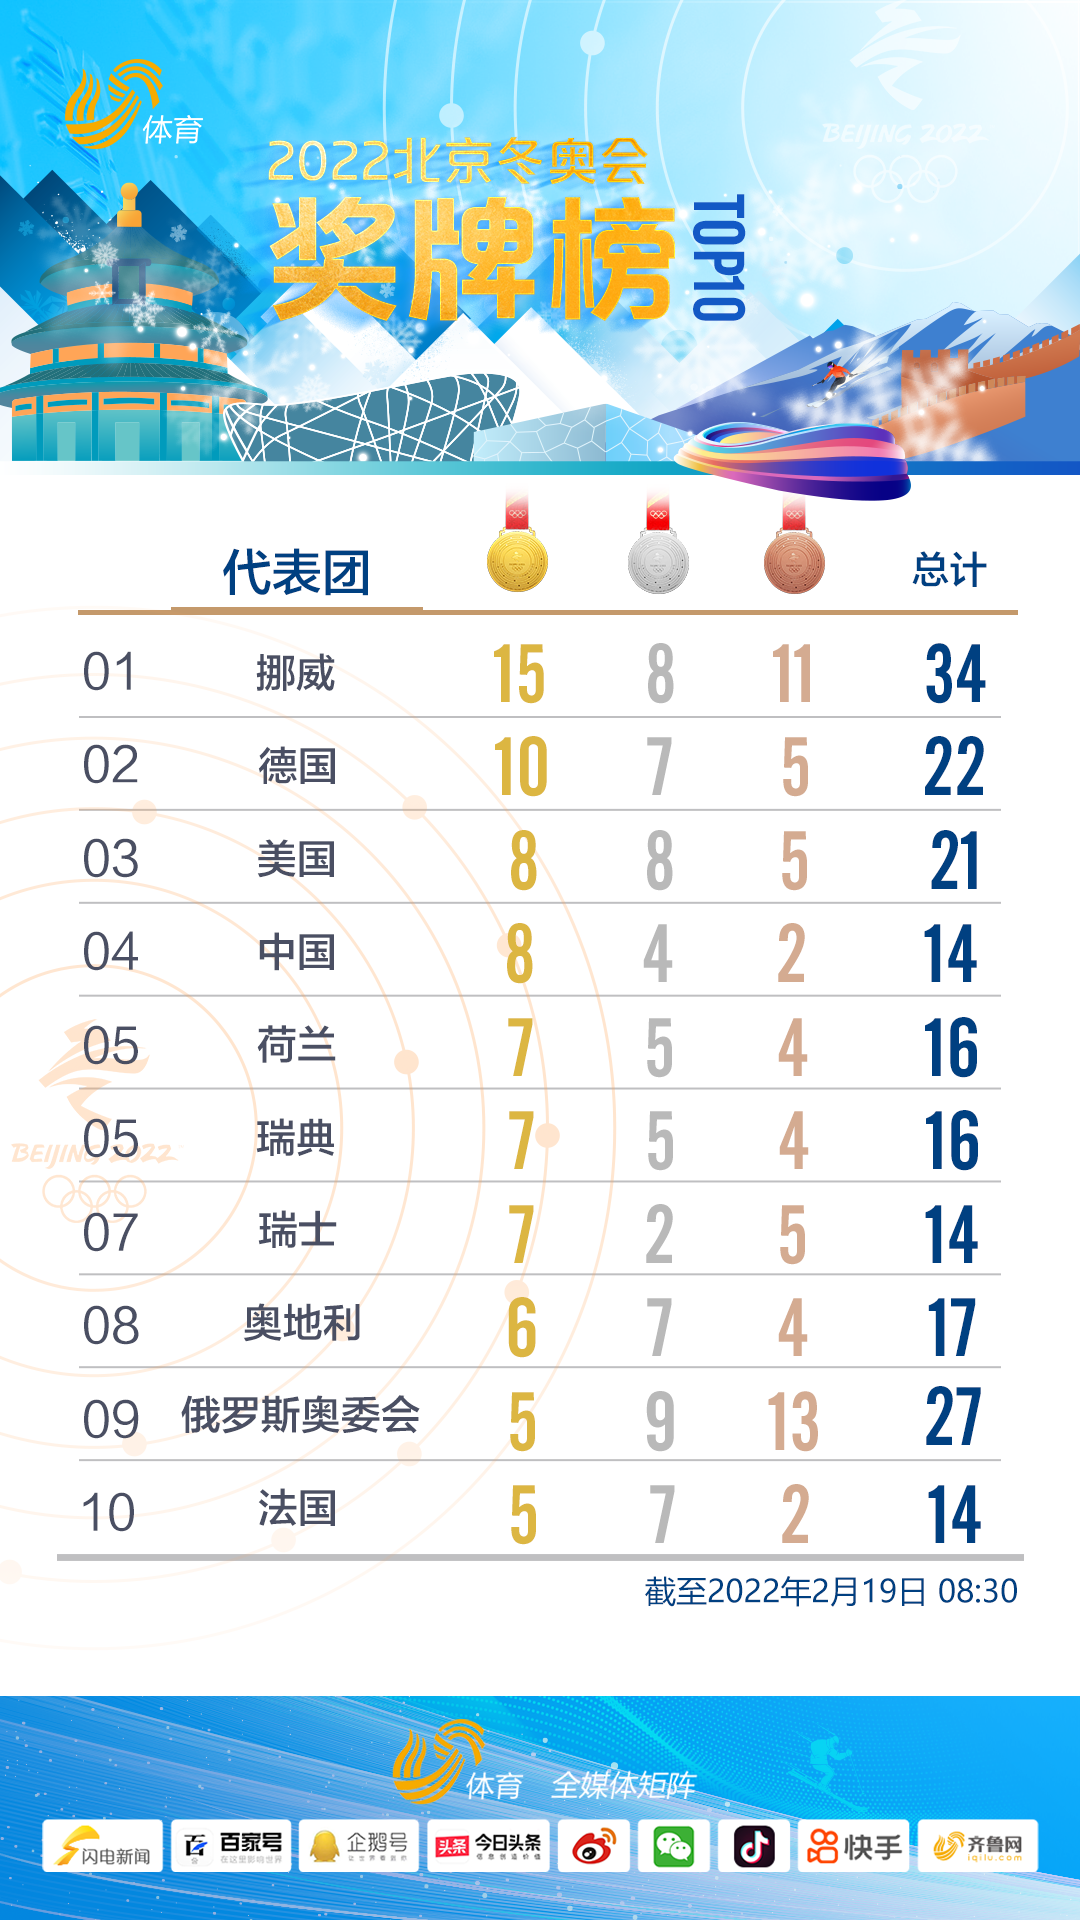 北京冬奥奖牌榜中国8金4银2铜暂列第四